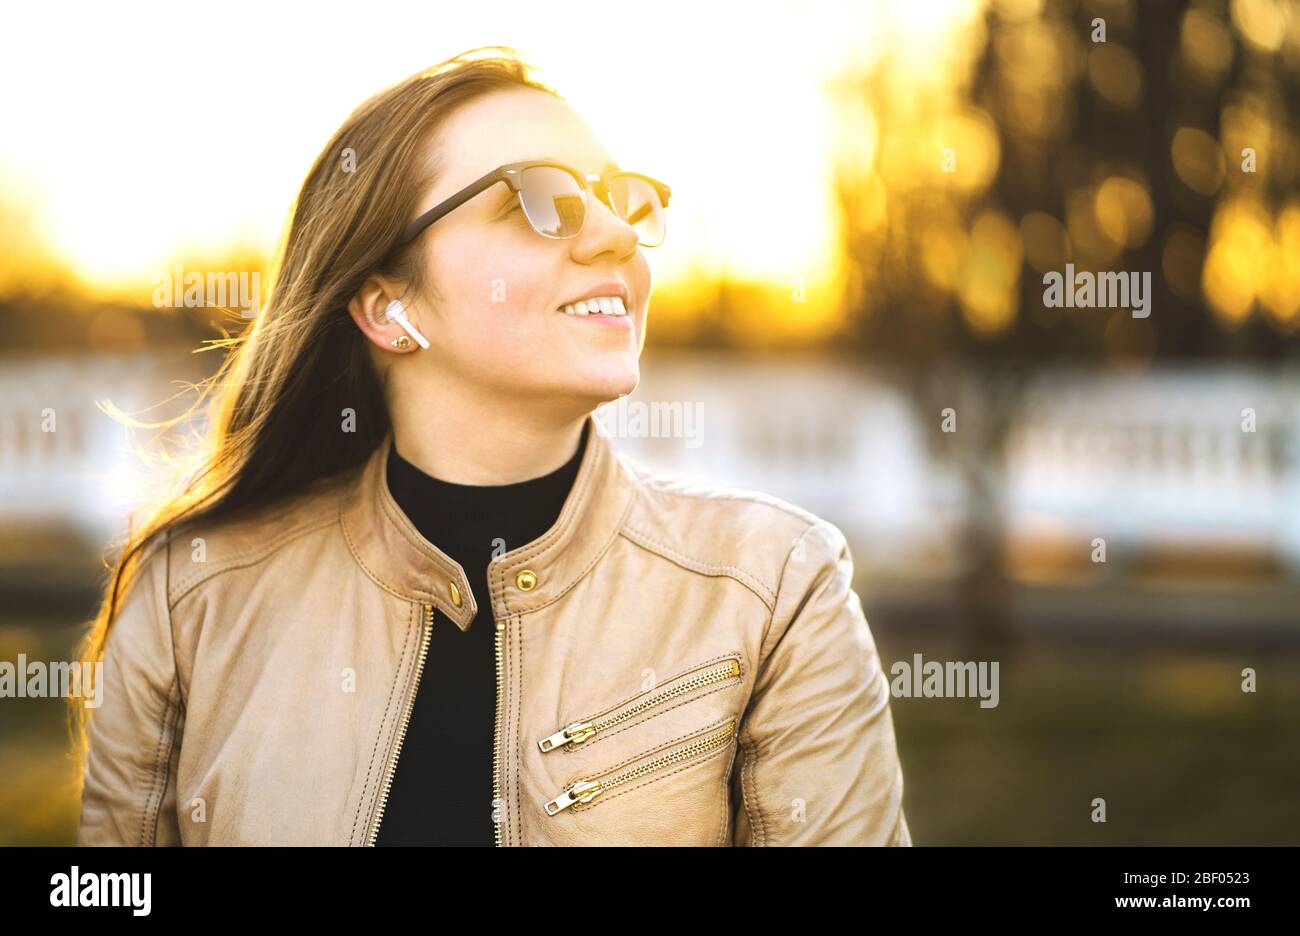 Kabellose Kopfhörer, Ohrhörer. Frau, die in einem Park Musik mit Ohrhörern hört. Glückliche junge Dame lächelnd. Sonnenbrille und Lederjacke. Stockfoto